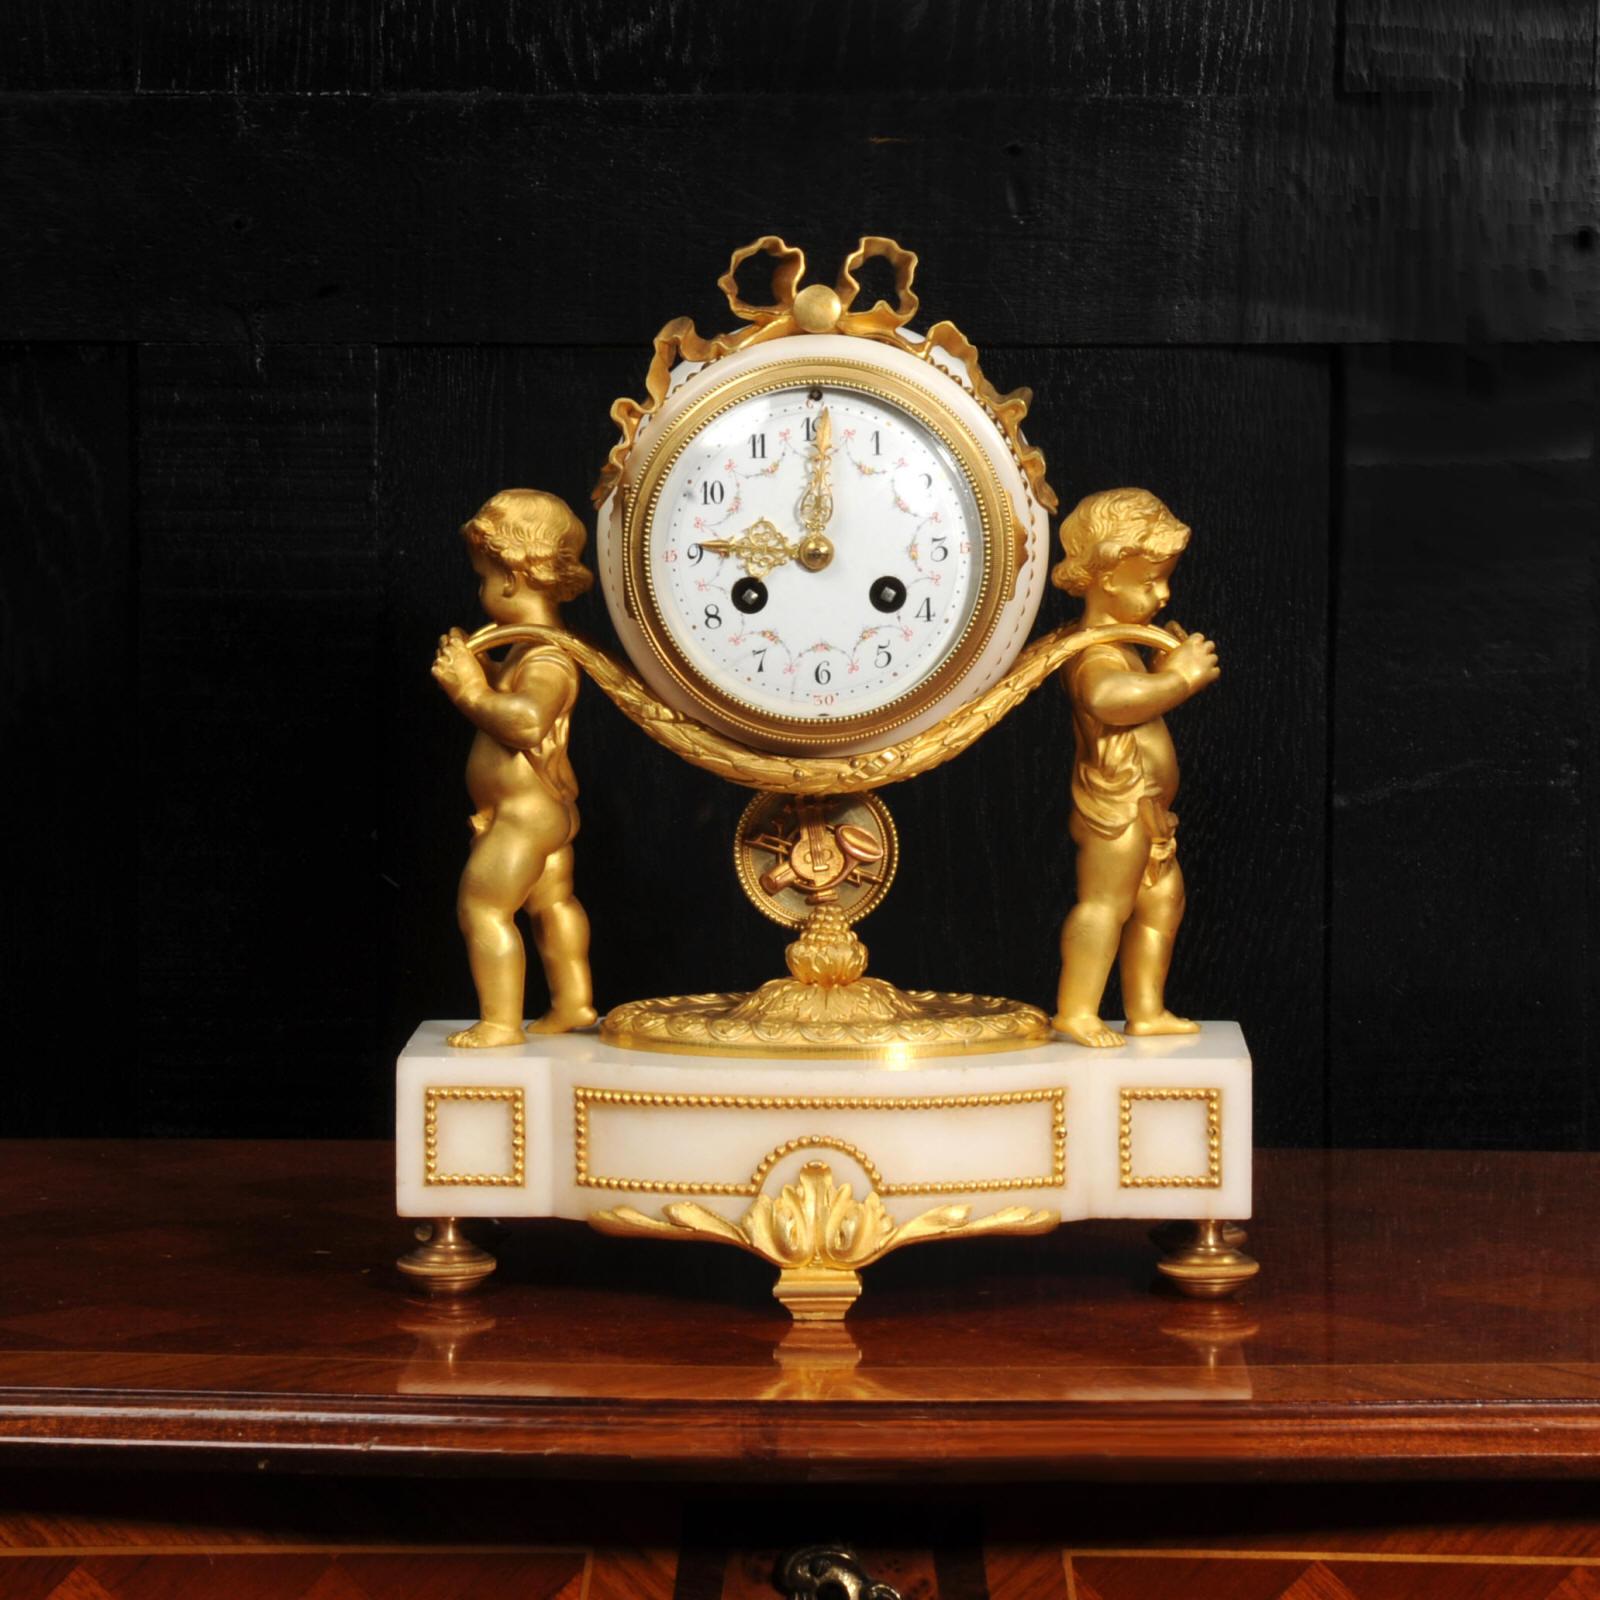 Une belle horloge française ancienne, de style Louis XVI, avec deux charmants chérubins portant l'horloge sur des couronnes de laurier. Le pendule avec des motifs musicaux appliqués, se balançant doucement en dessous. Il est magnifique, réalisé en